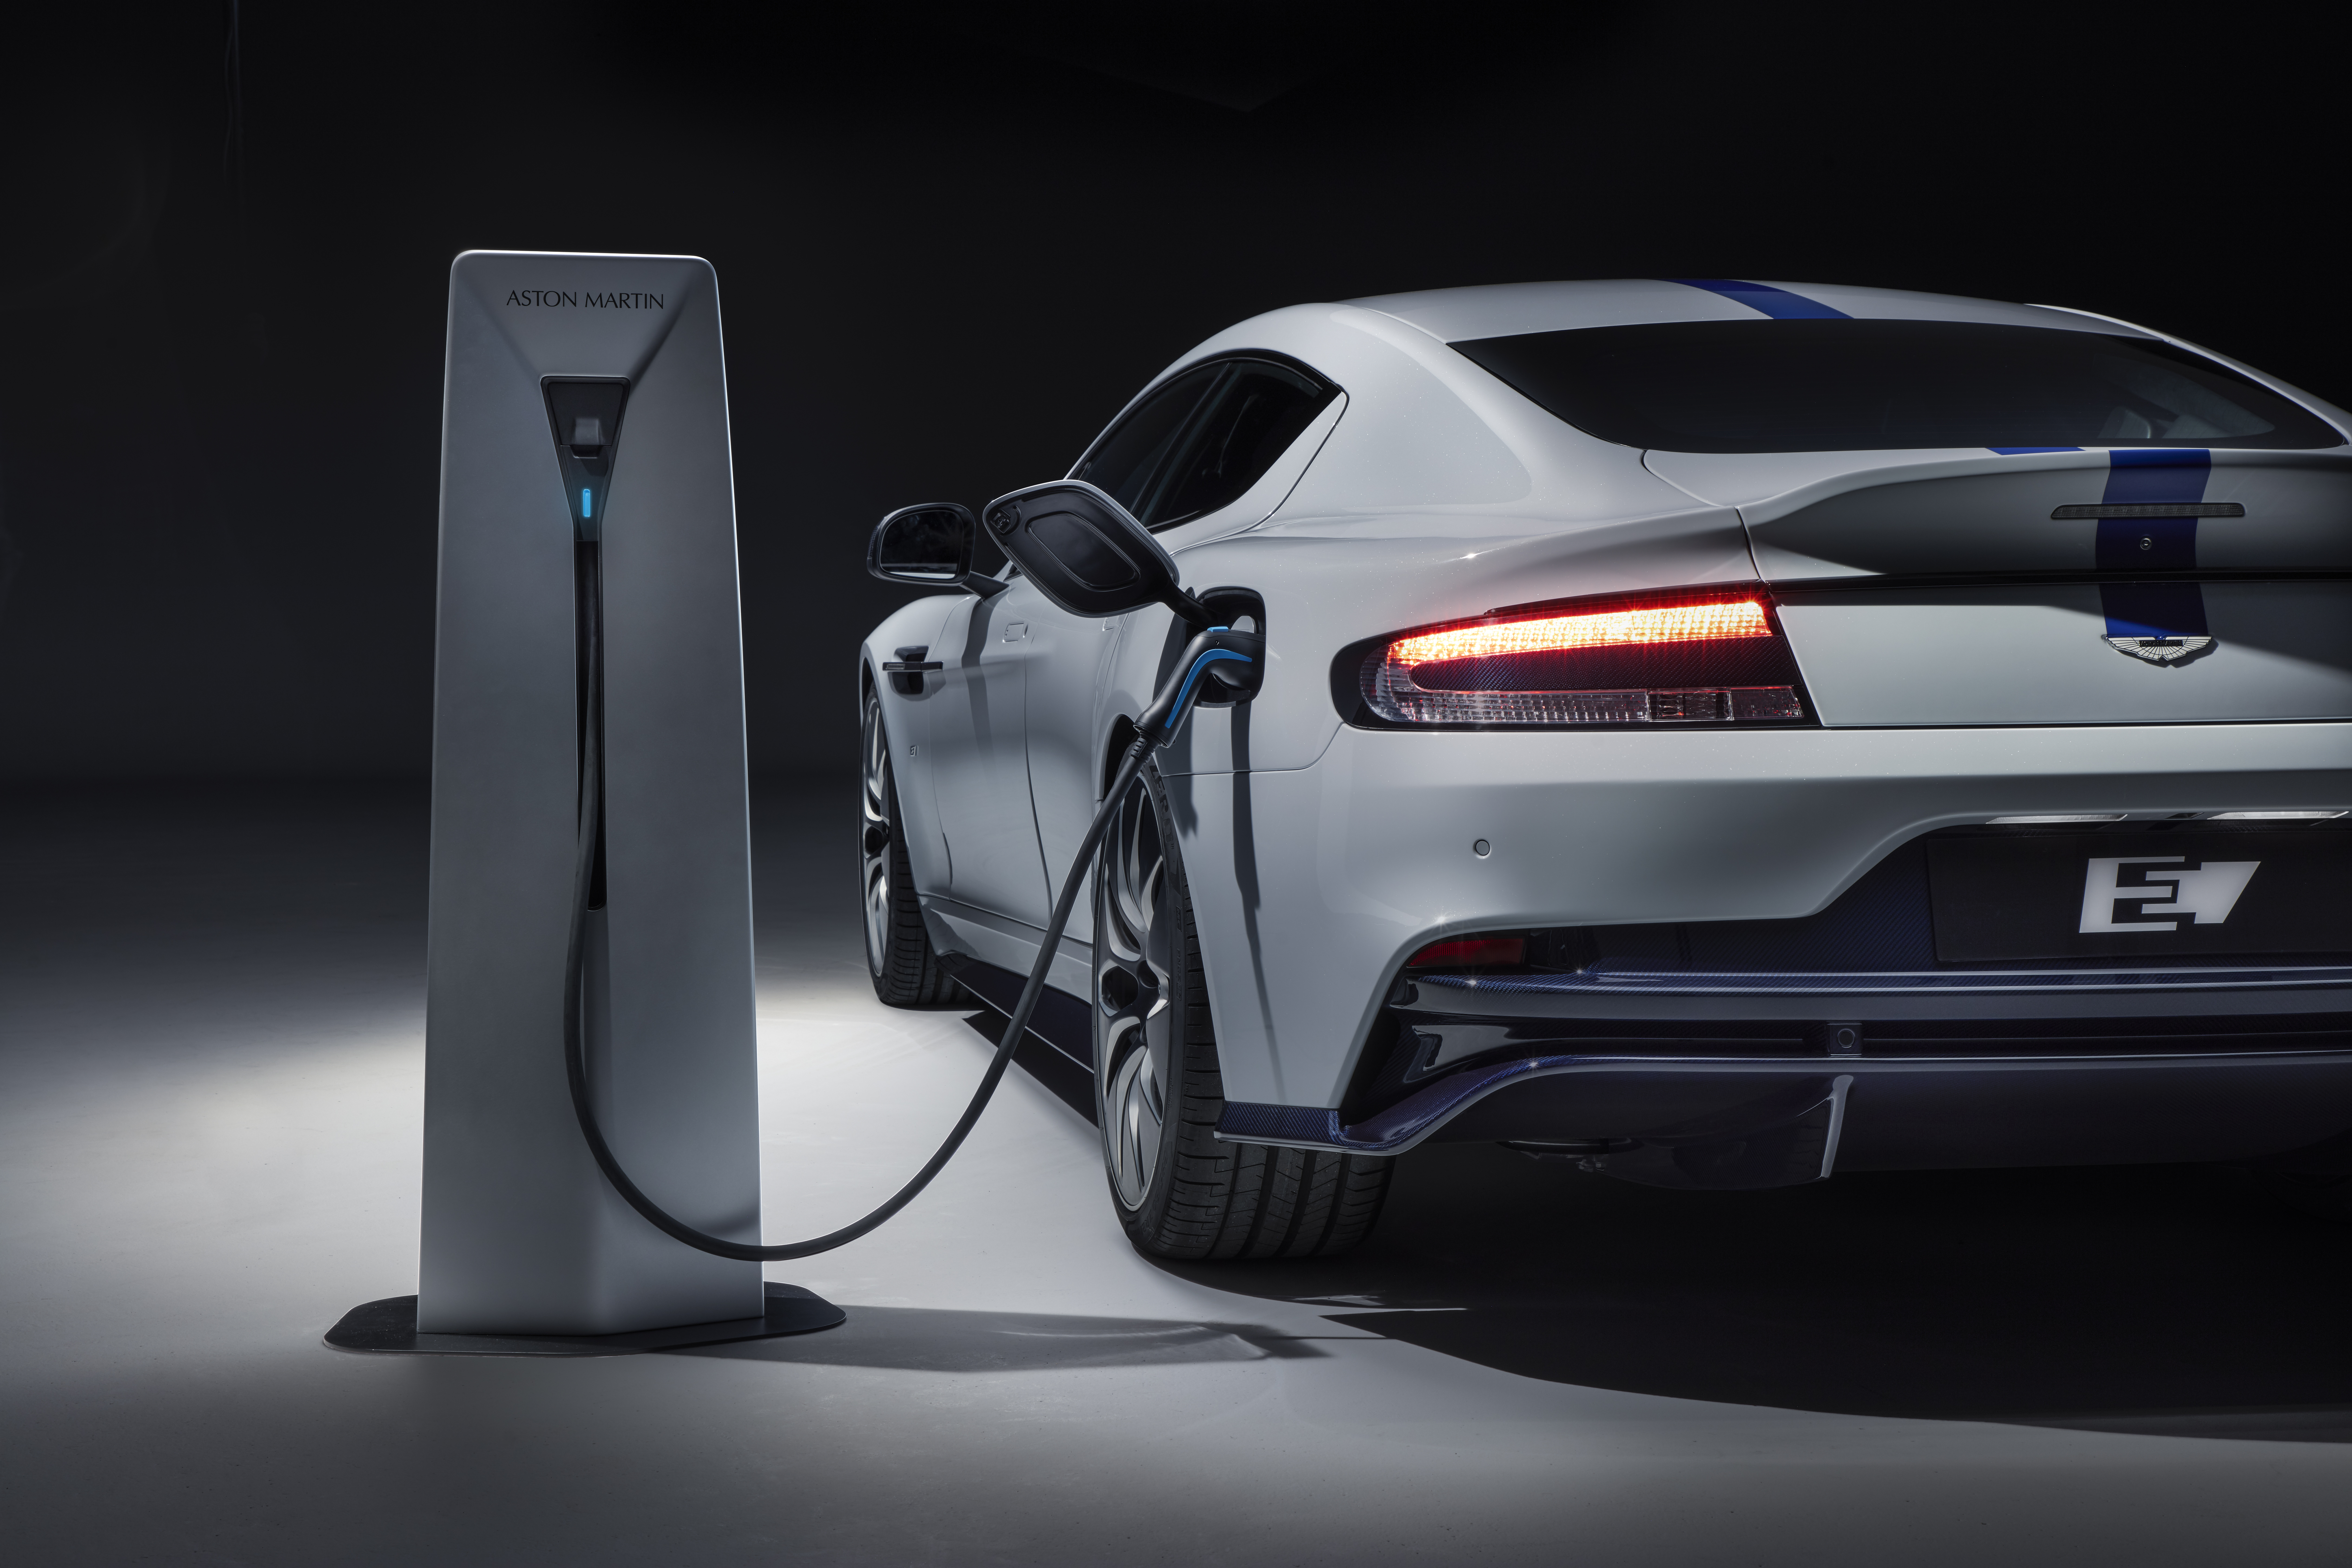 Aston Martin Rapide E agente 007 a zero emissioni